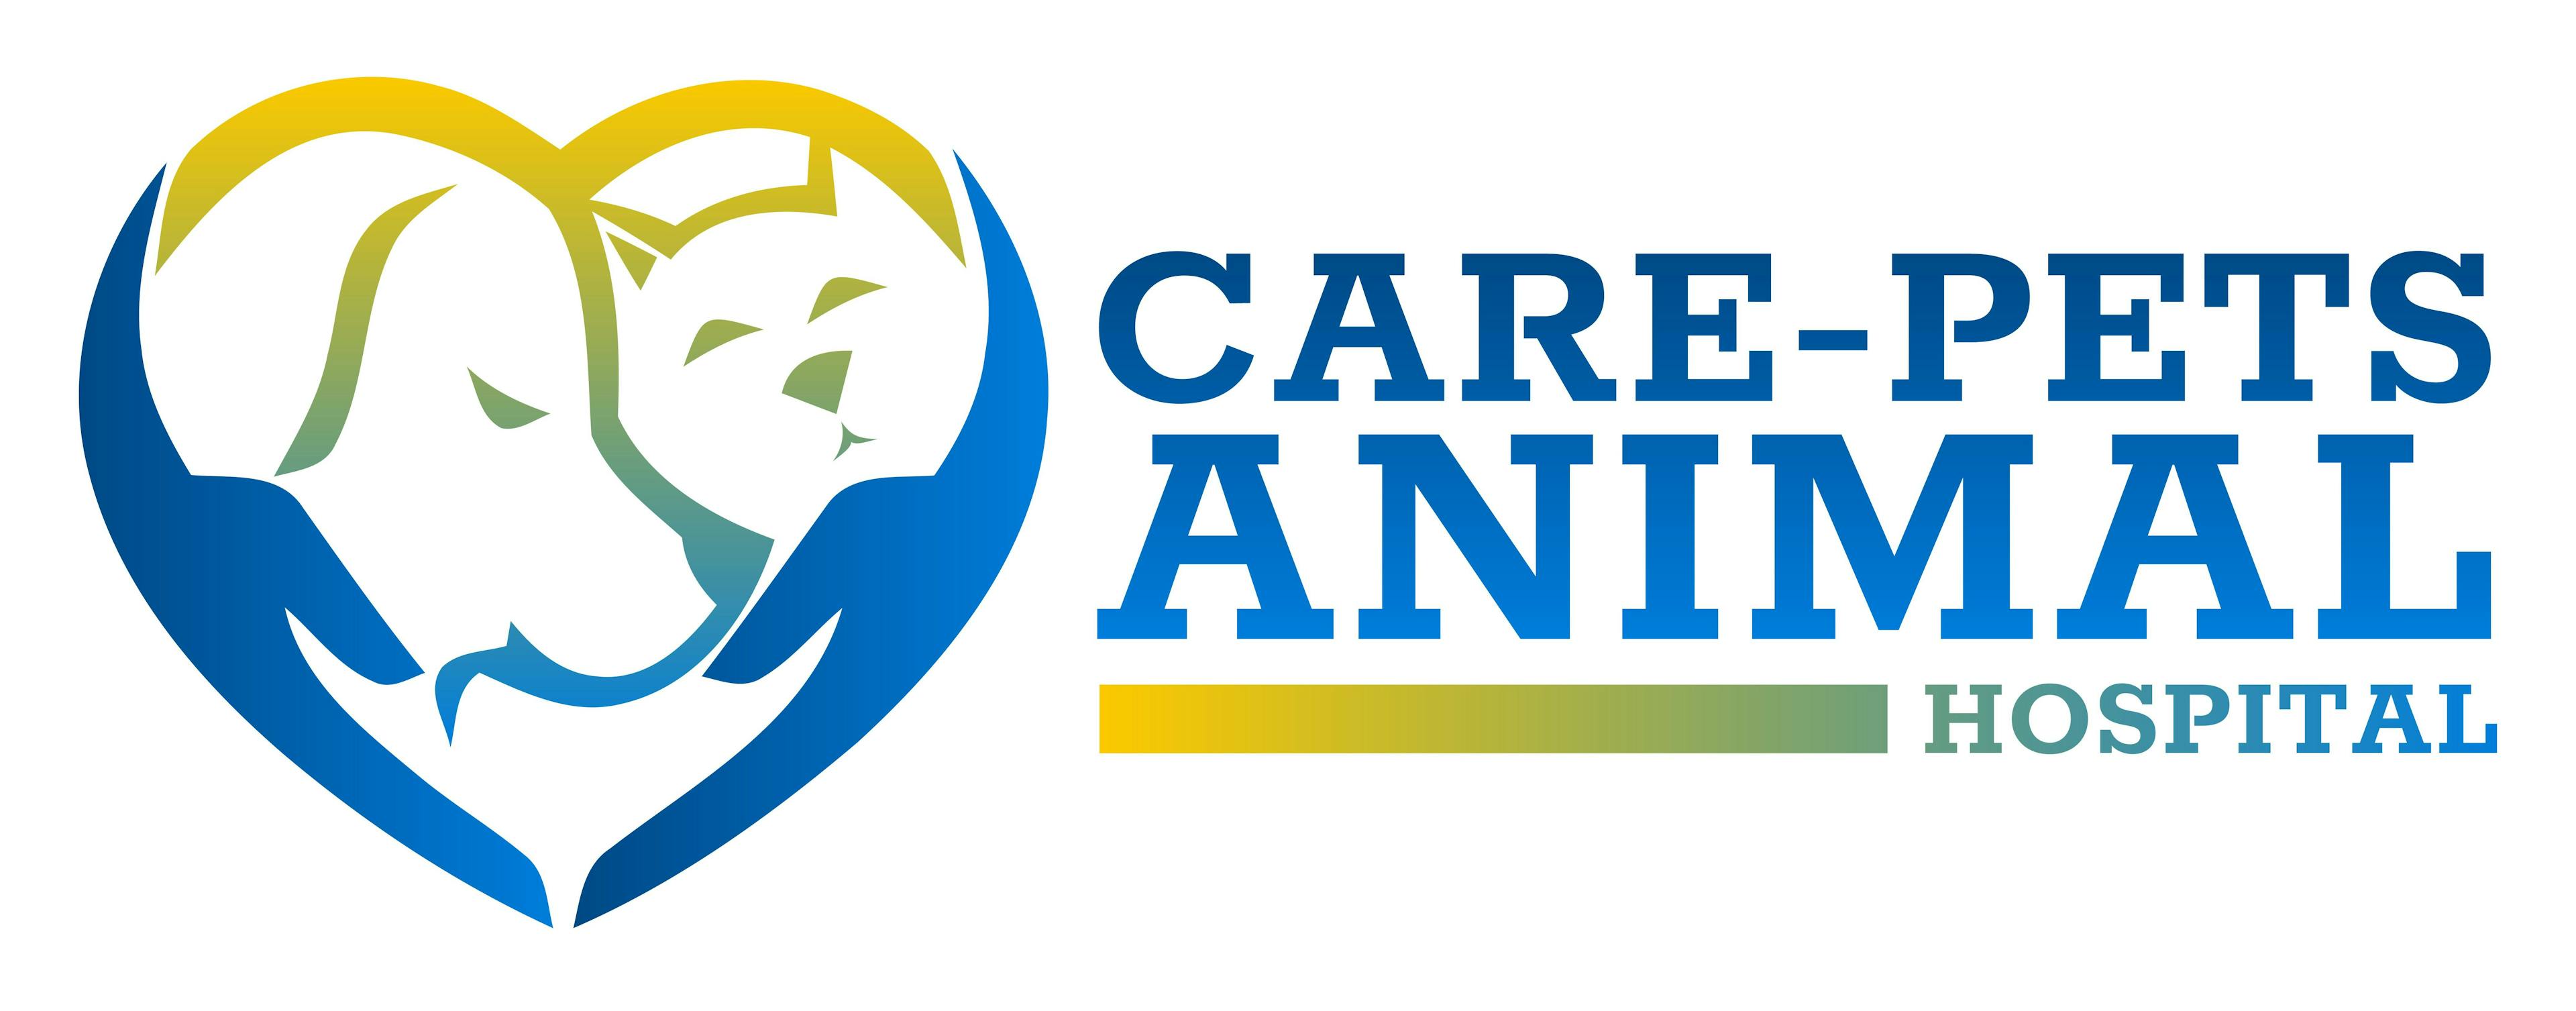 Care-Pets Animal Hospital & Wellness Center Logo